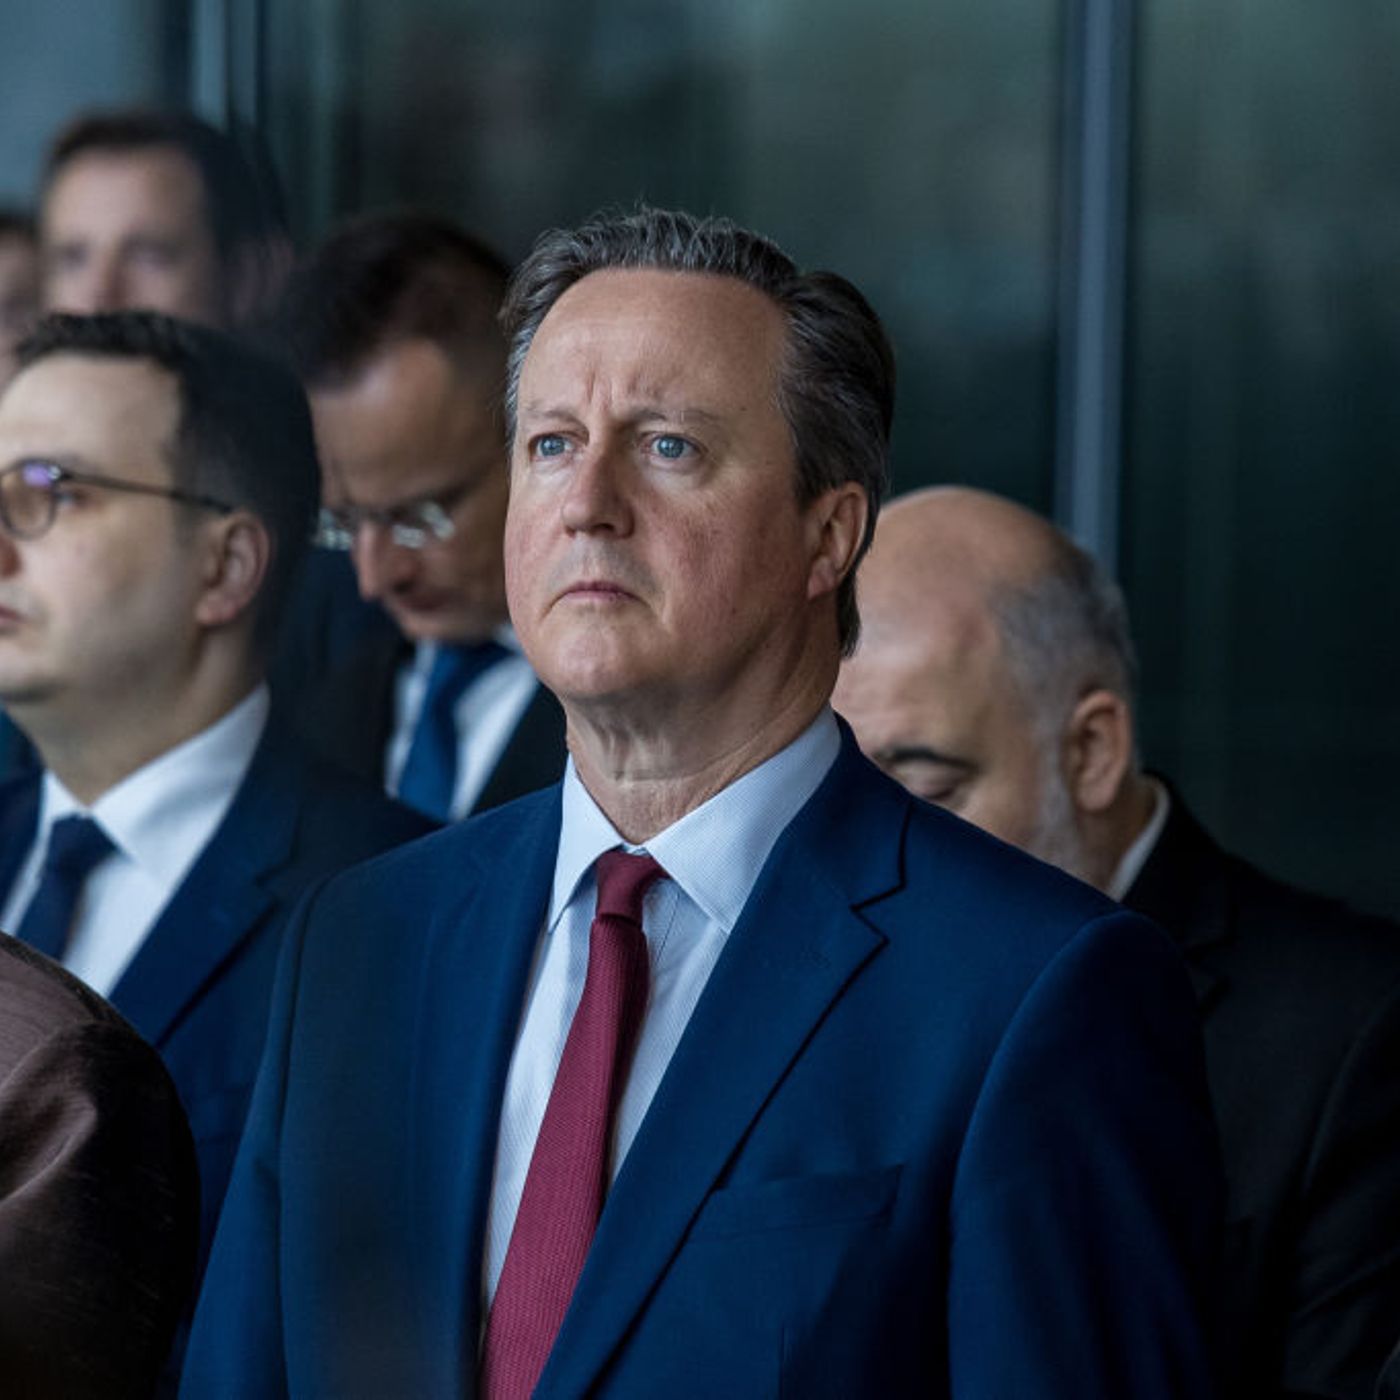 Will David Cameron win over Republicans?